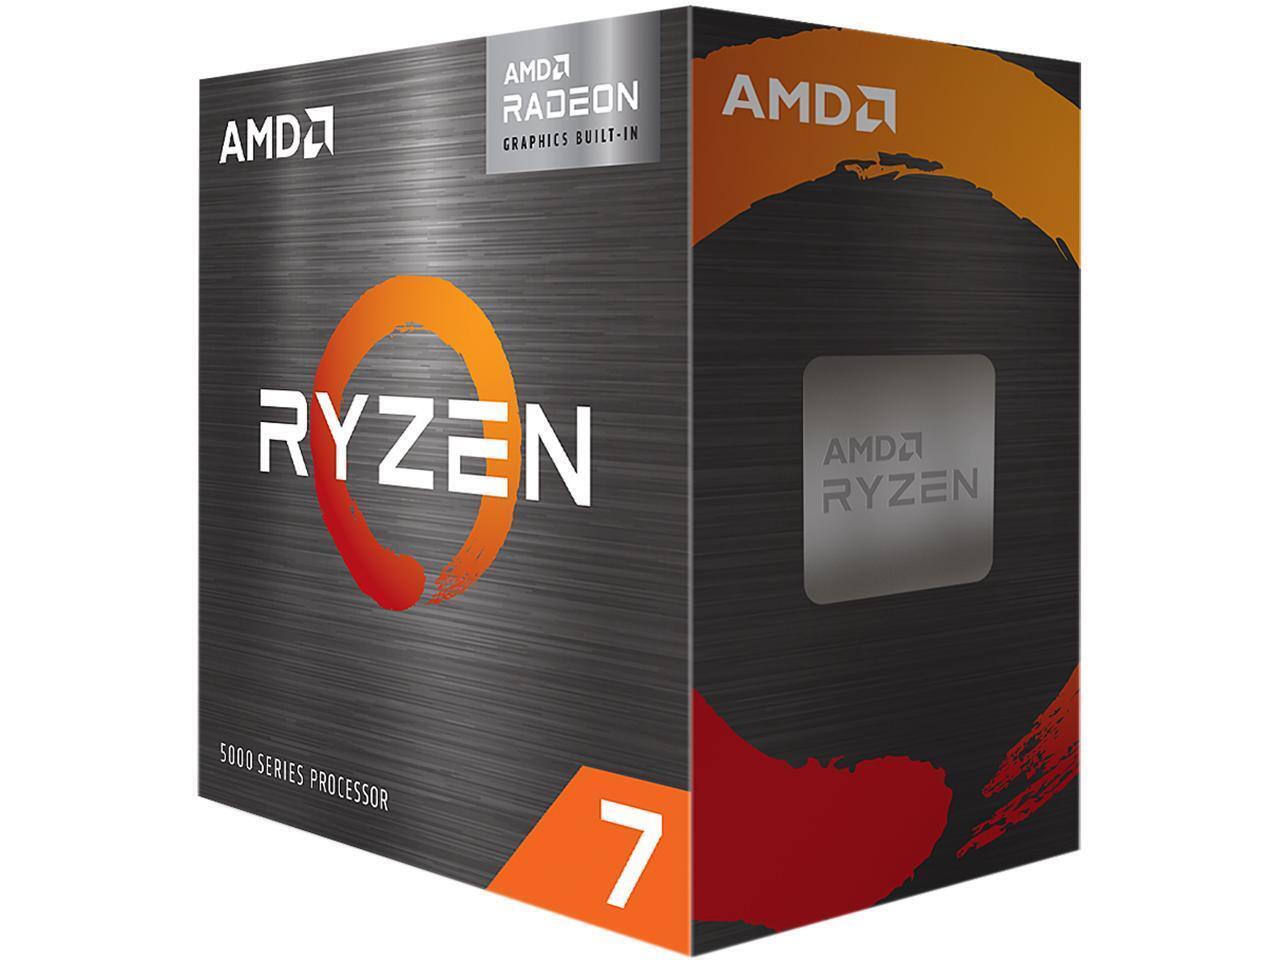 AMD Ryzen 7 5700G-Ryzen 7 5000 G-Series Cezanne (Zen 3) 8-Core 3.8GHz Socket AM4